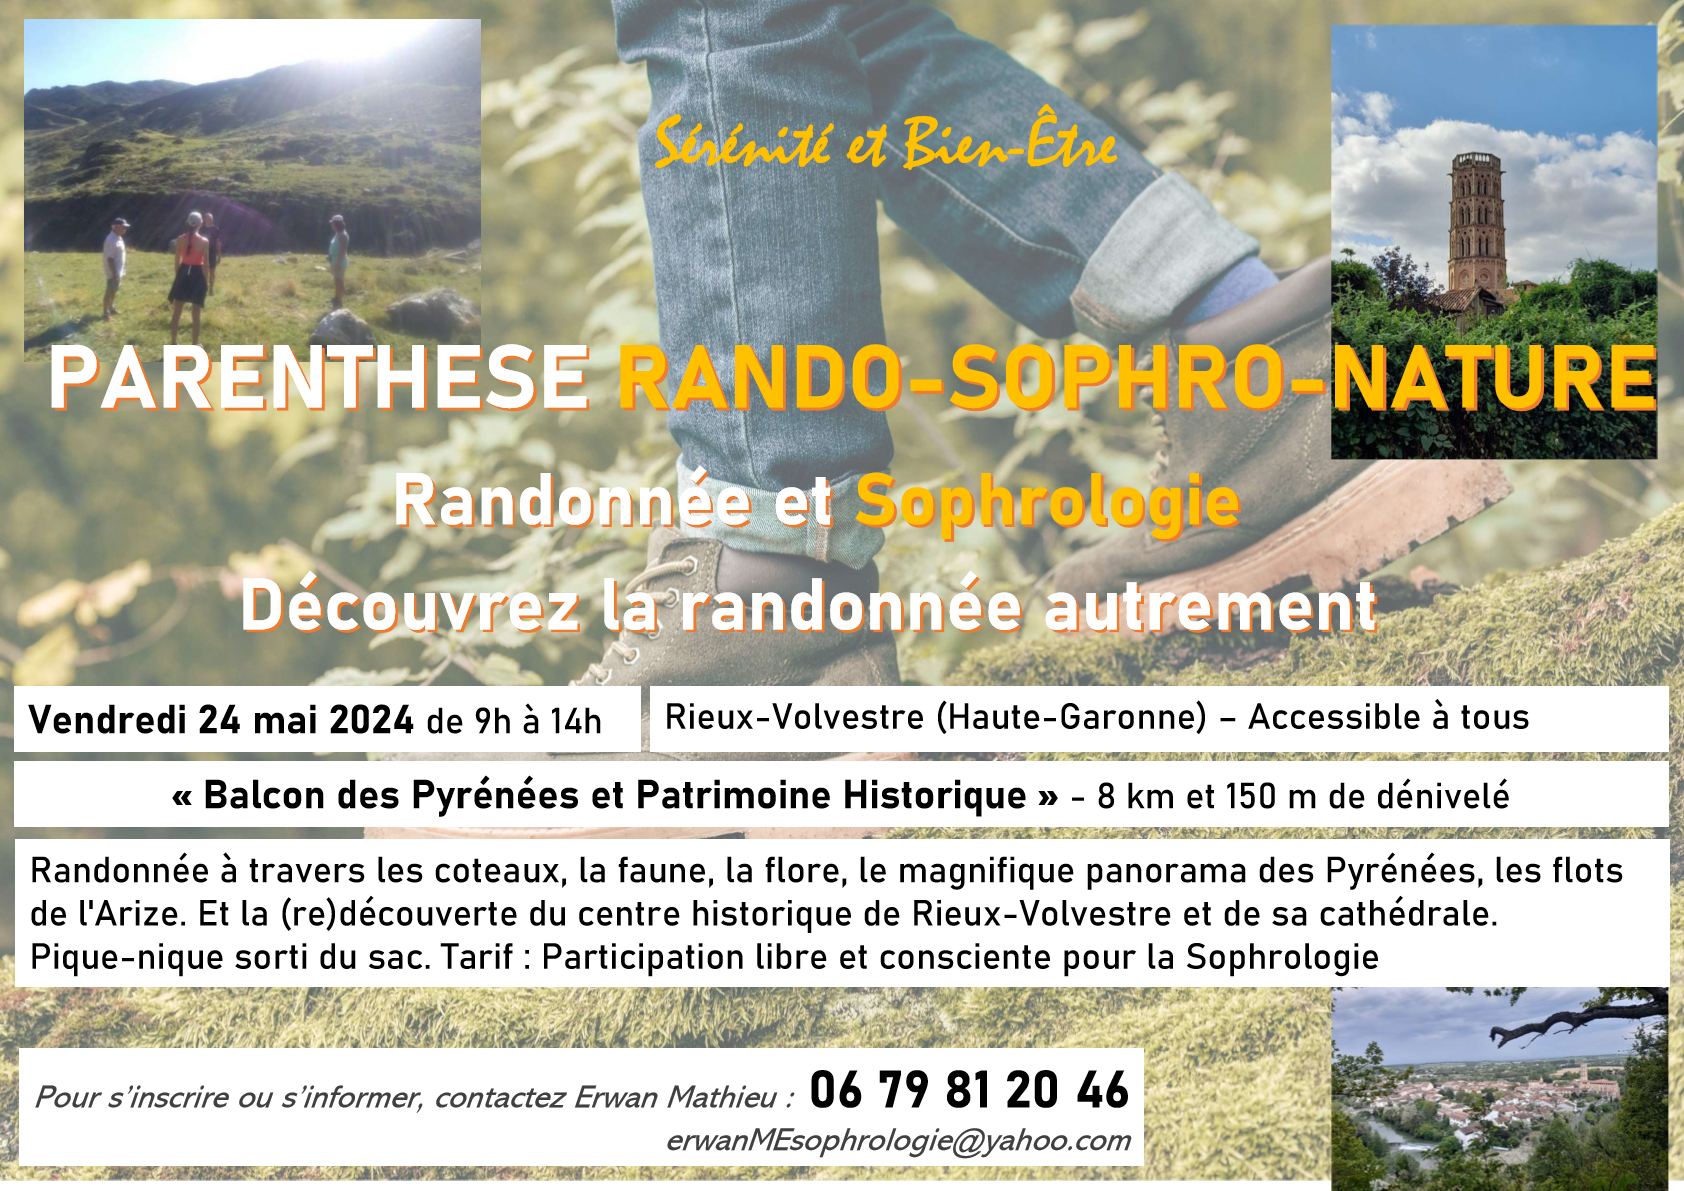 RANDO-SOPHRO-NATURE Le 24 mai 2024